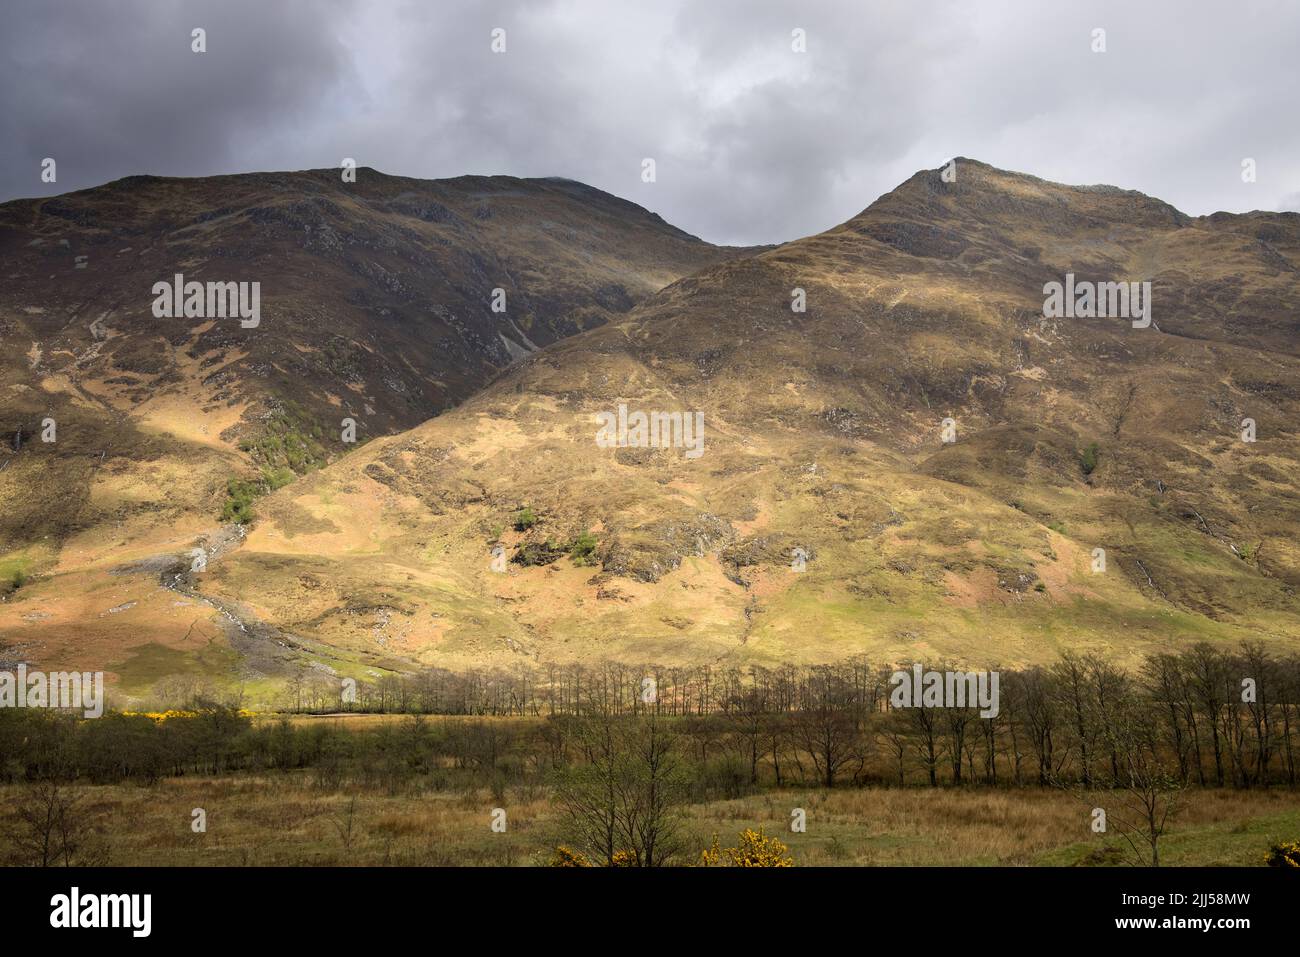 dramatic scene in glen shiel in the highlands of scotland Stock Photo